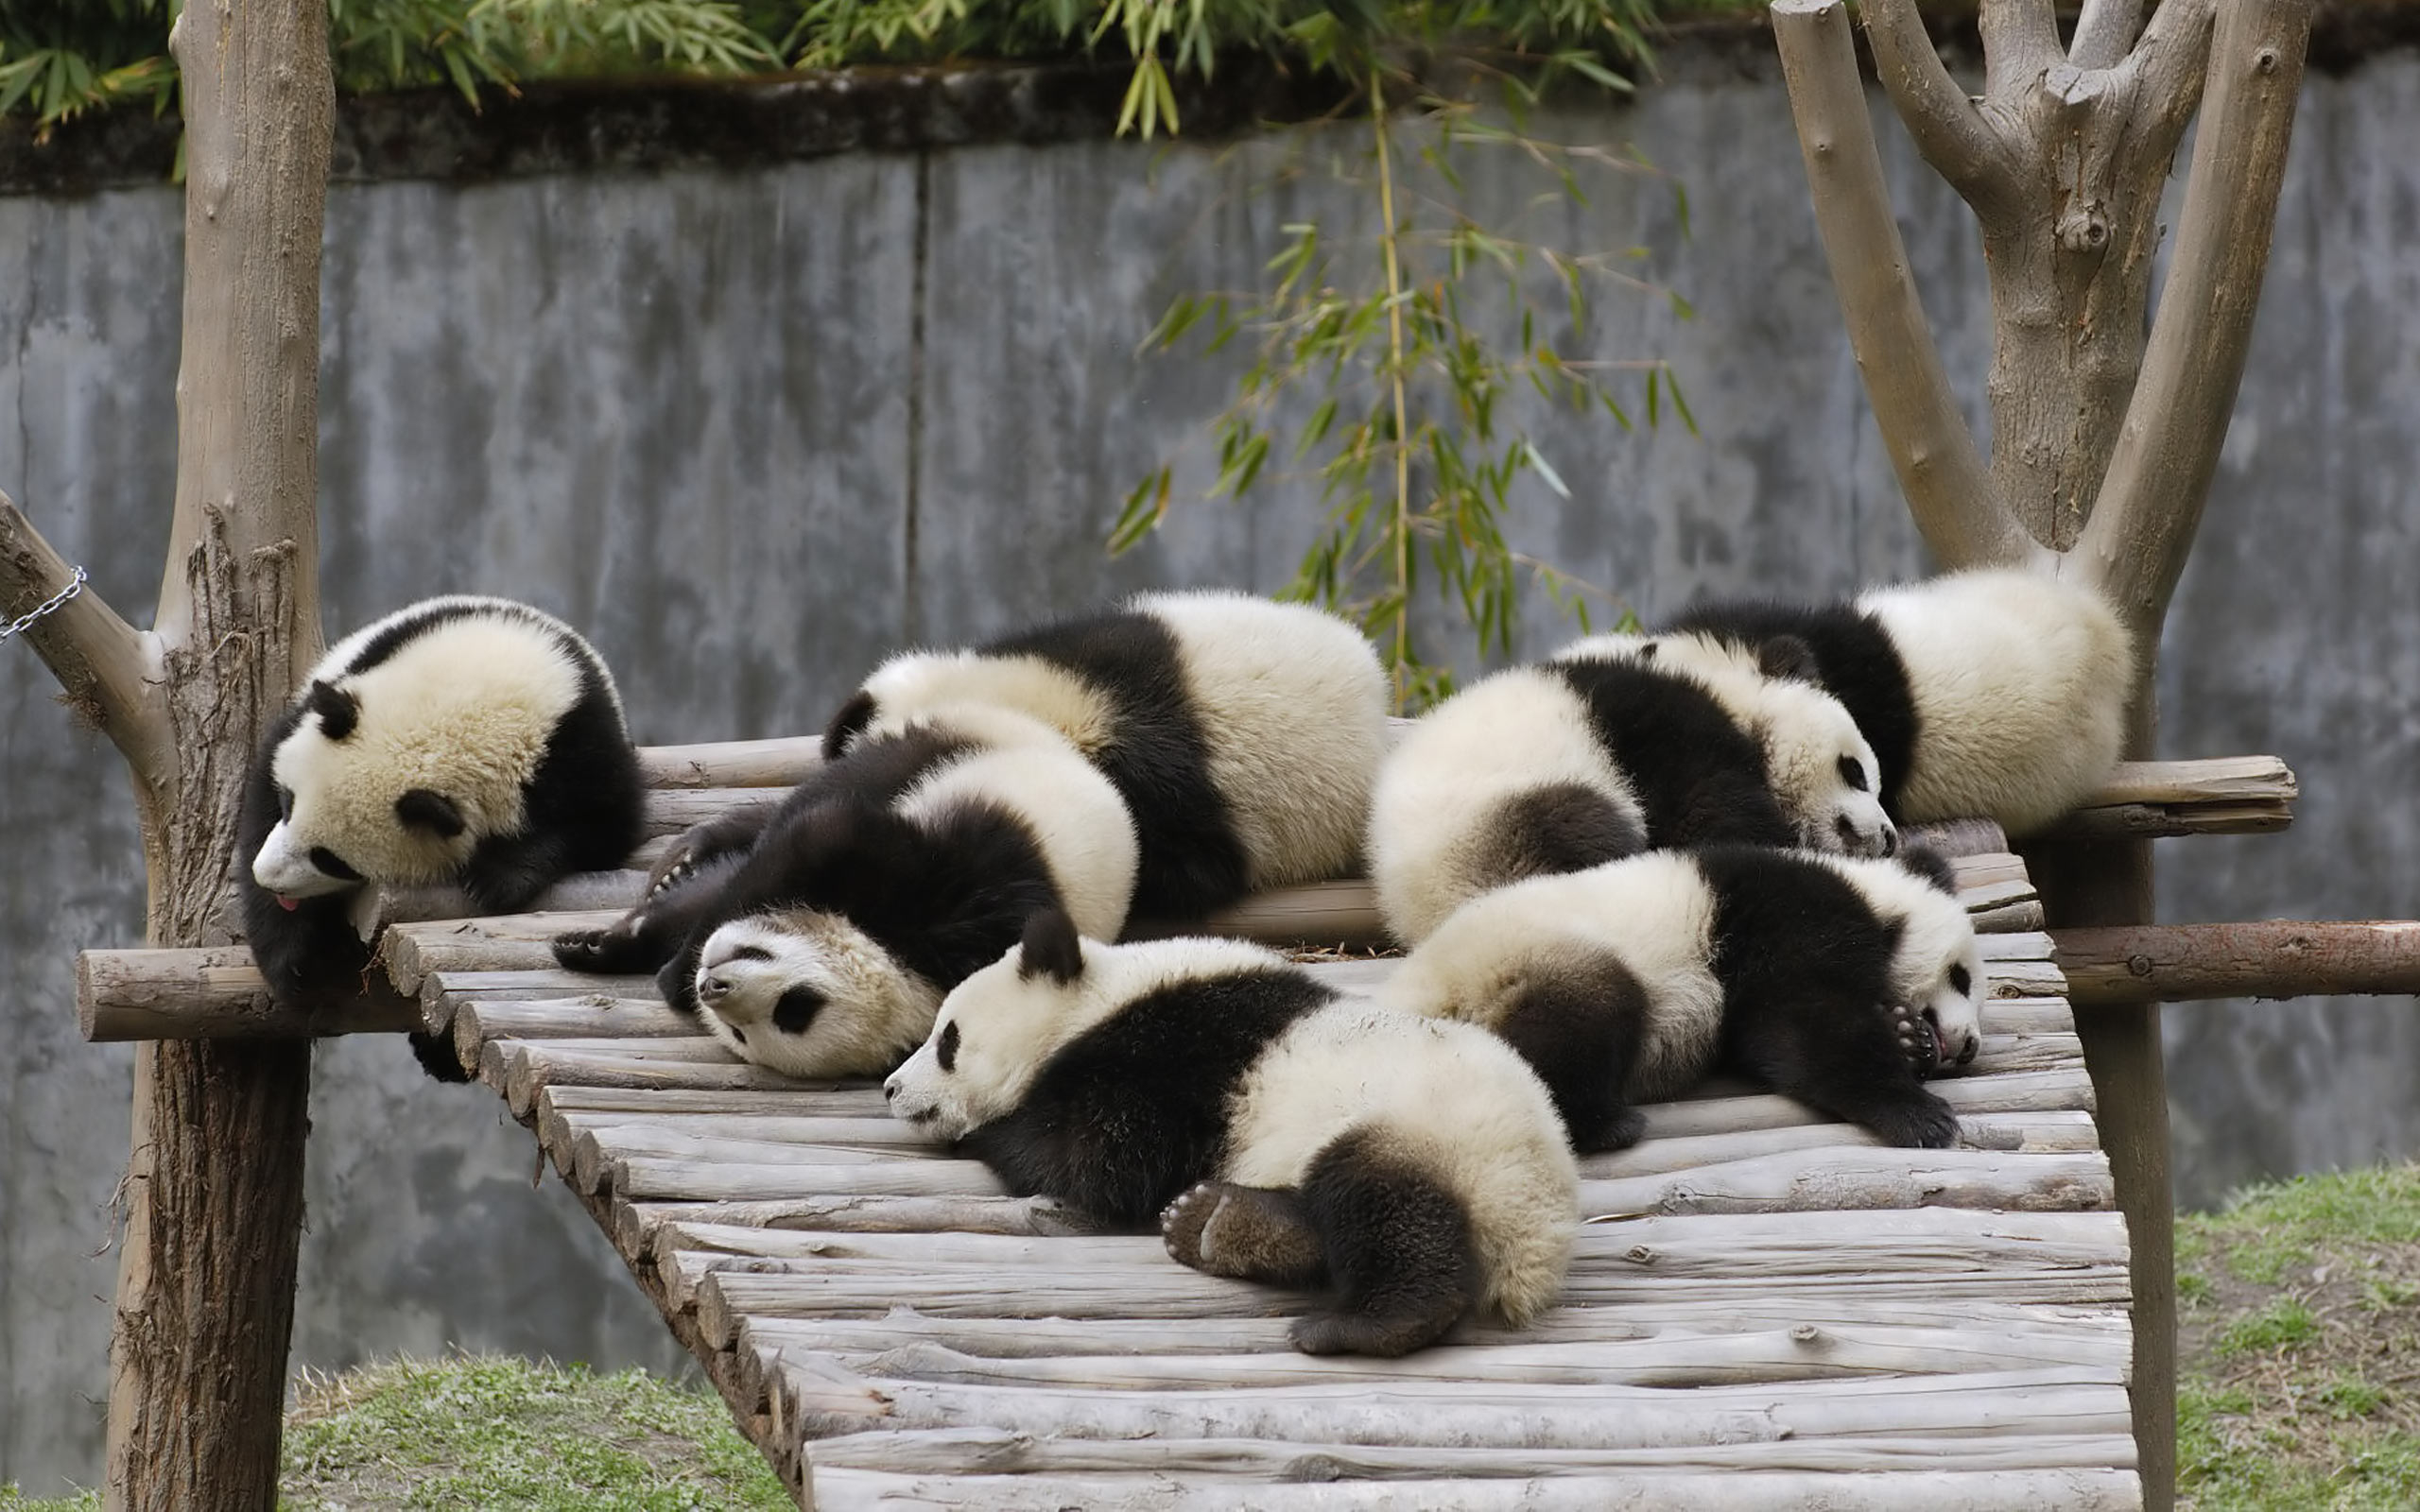 Sleeping pandas